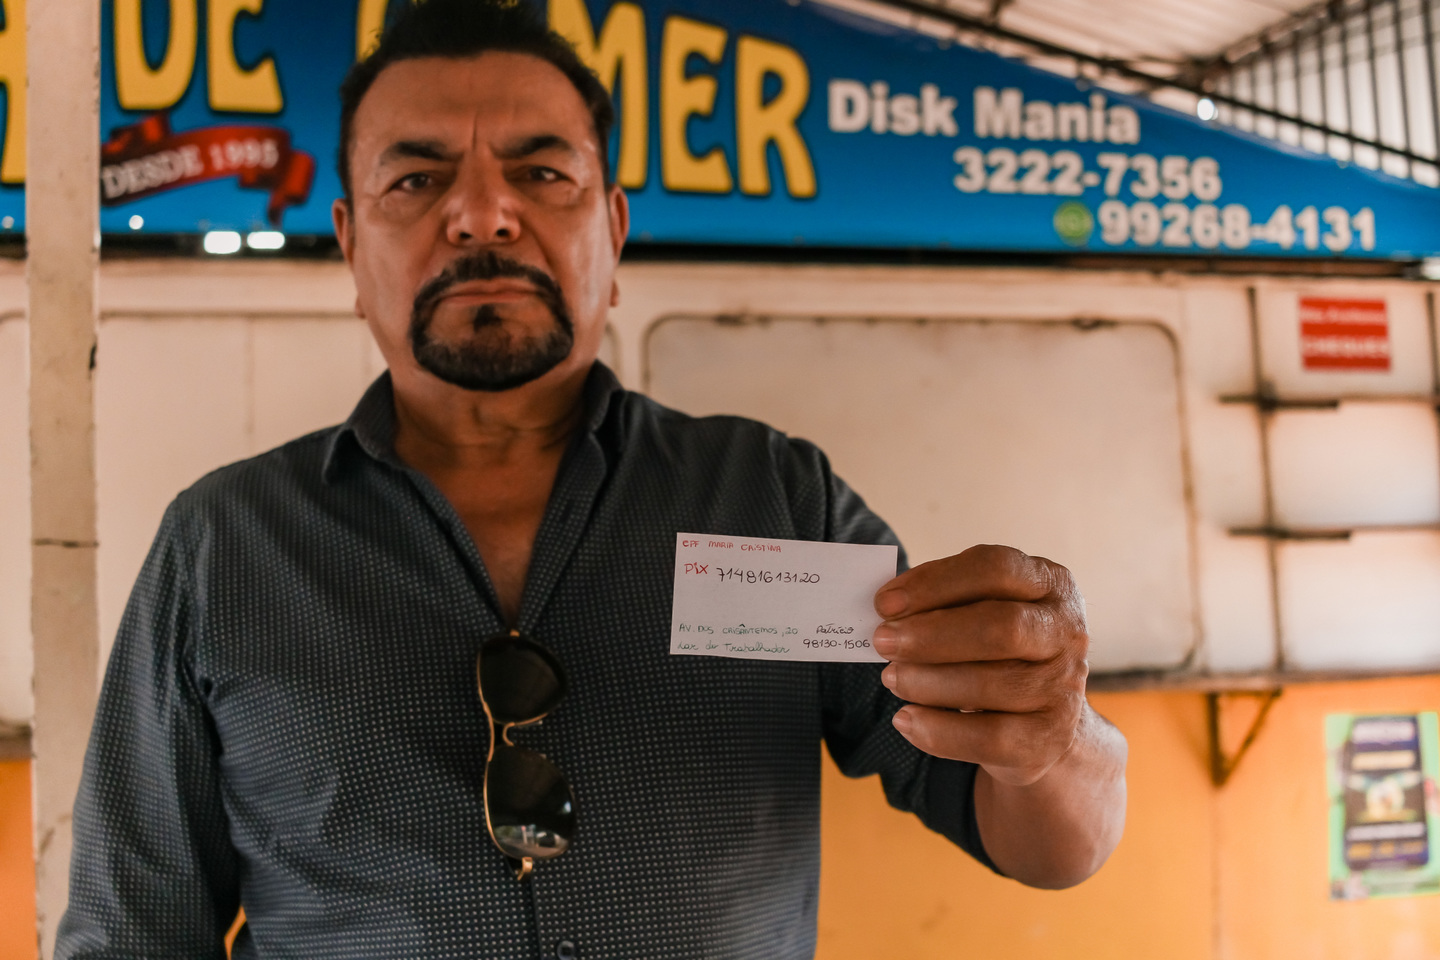 Patrício diz que as pessoas podem fazer pagamentos via PIX (na imagem) e também podem pagar no dinheiro. Foto: Tero Queiroz